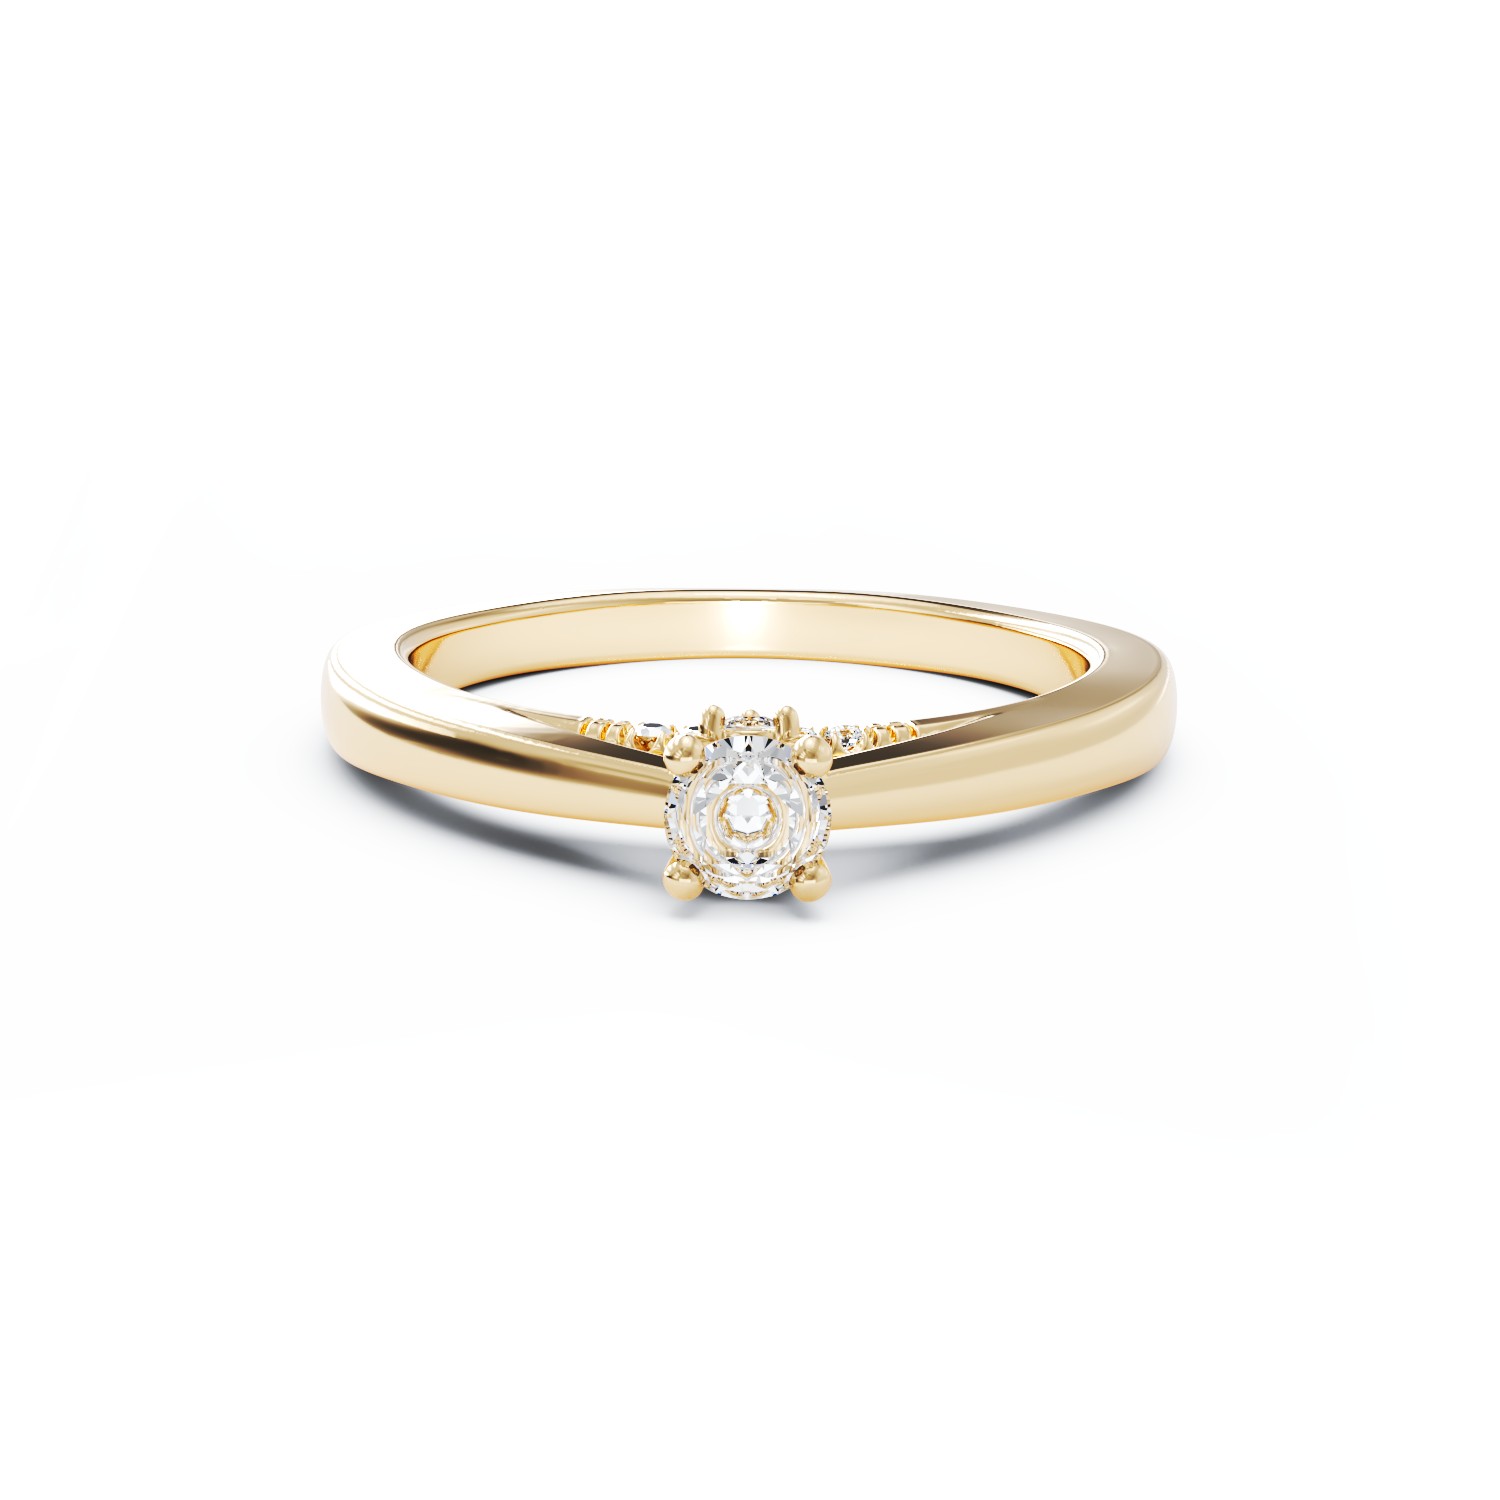 Eljegyzési gyűrű 18K-os sárga aranyból 0,2ct gyémánttal és 0,04ct gyémántokkal. Gramm: 2,88